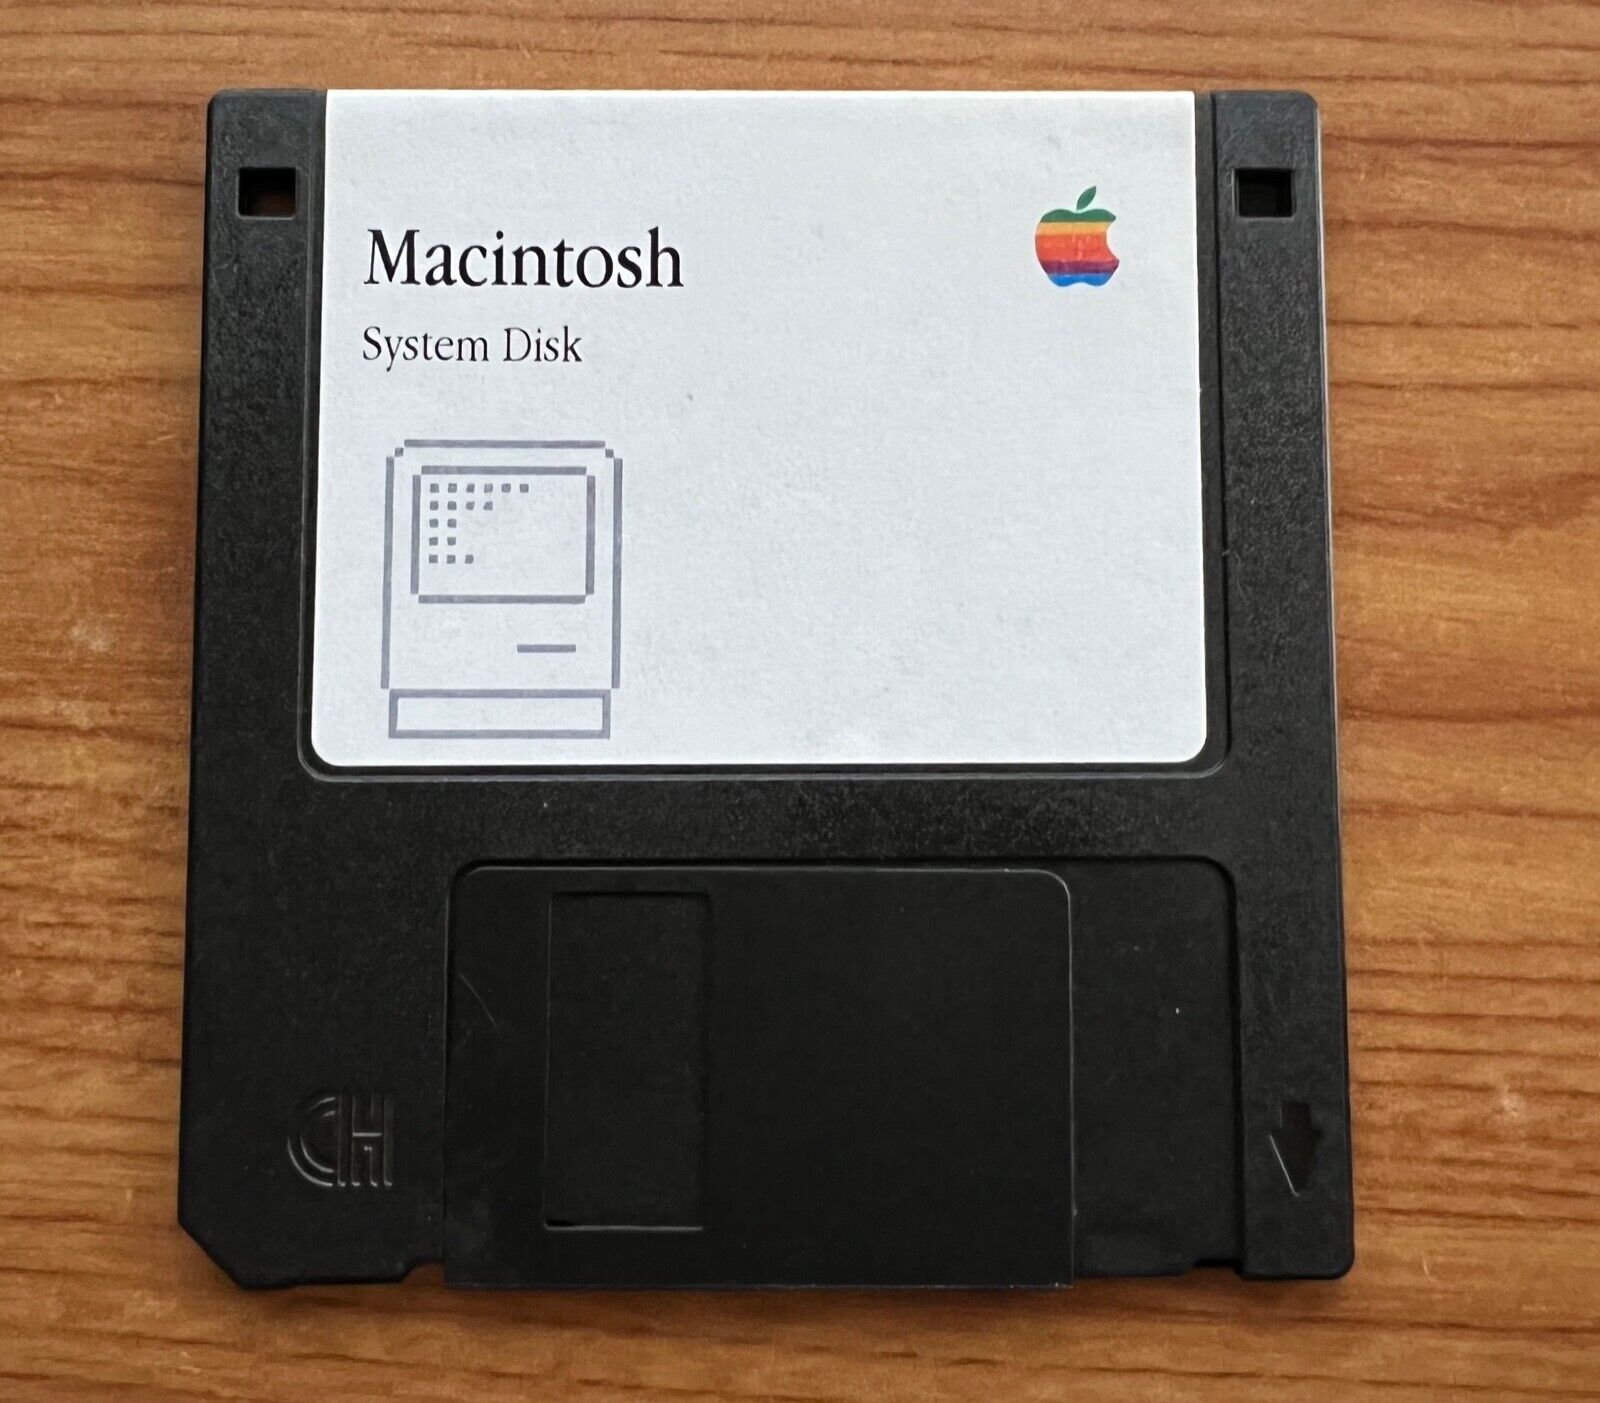 Apple Macintosh Startup Disk for Vintage Mac - System 6.0.8L 1.44MB Startup Disk